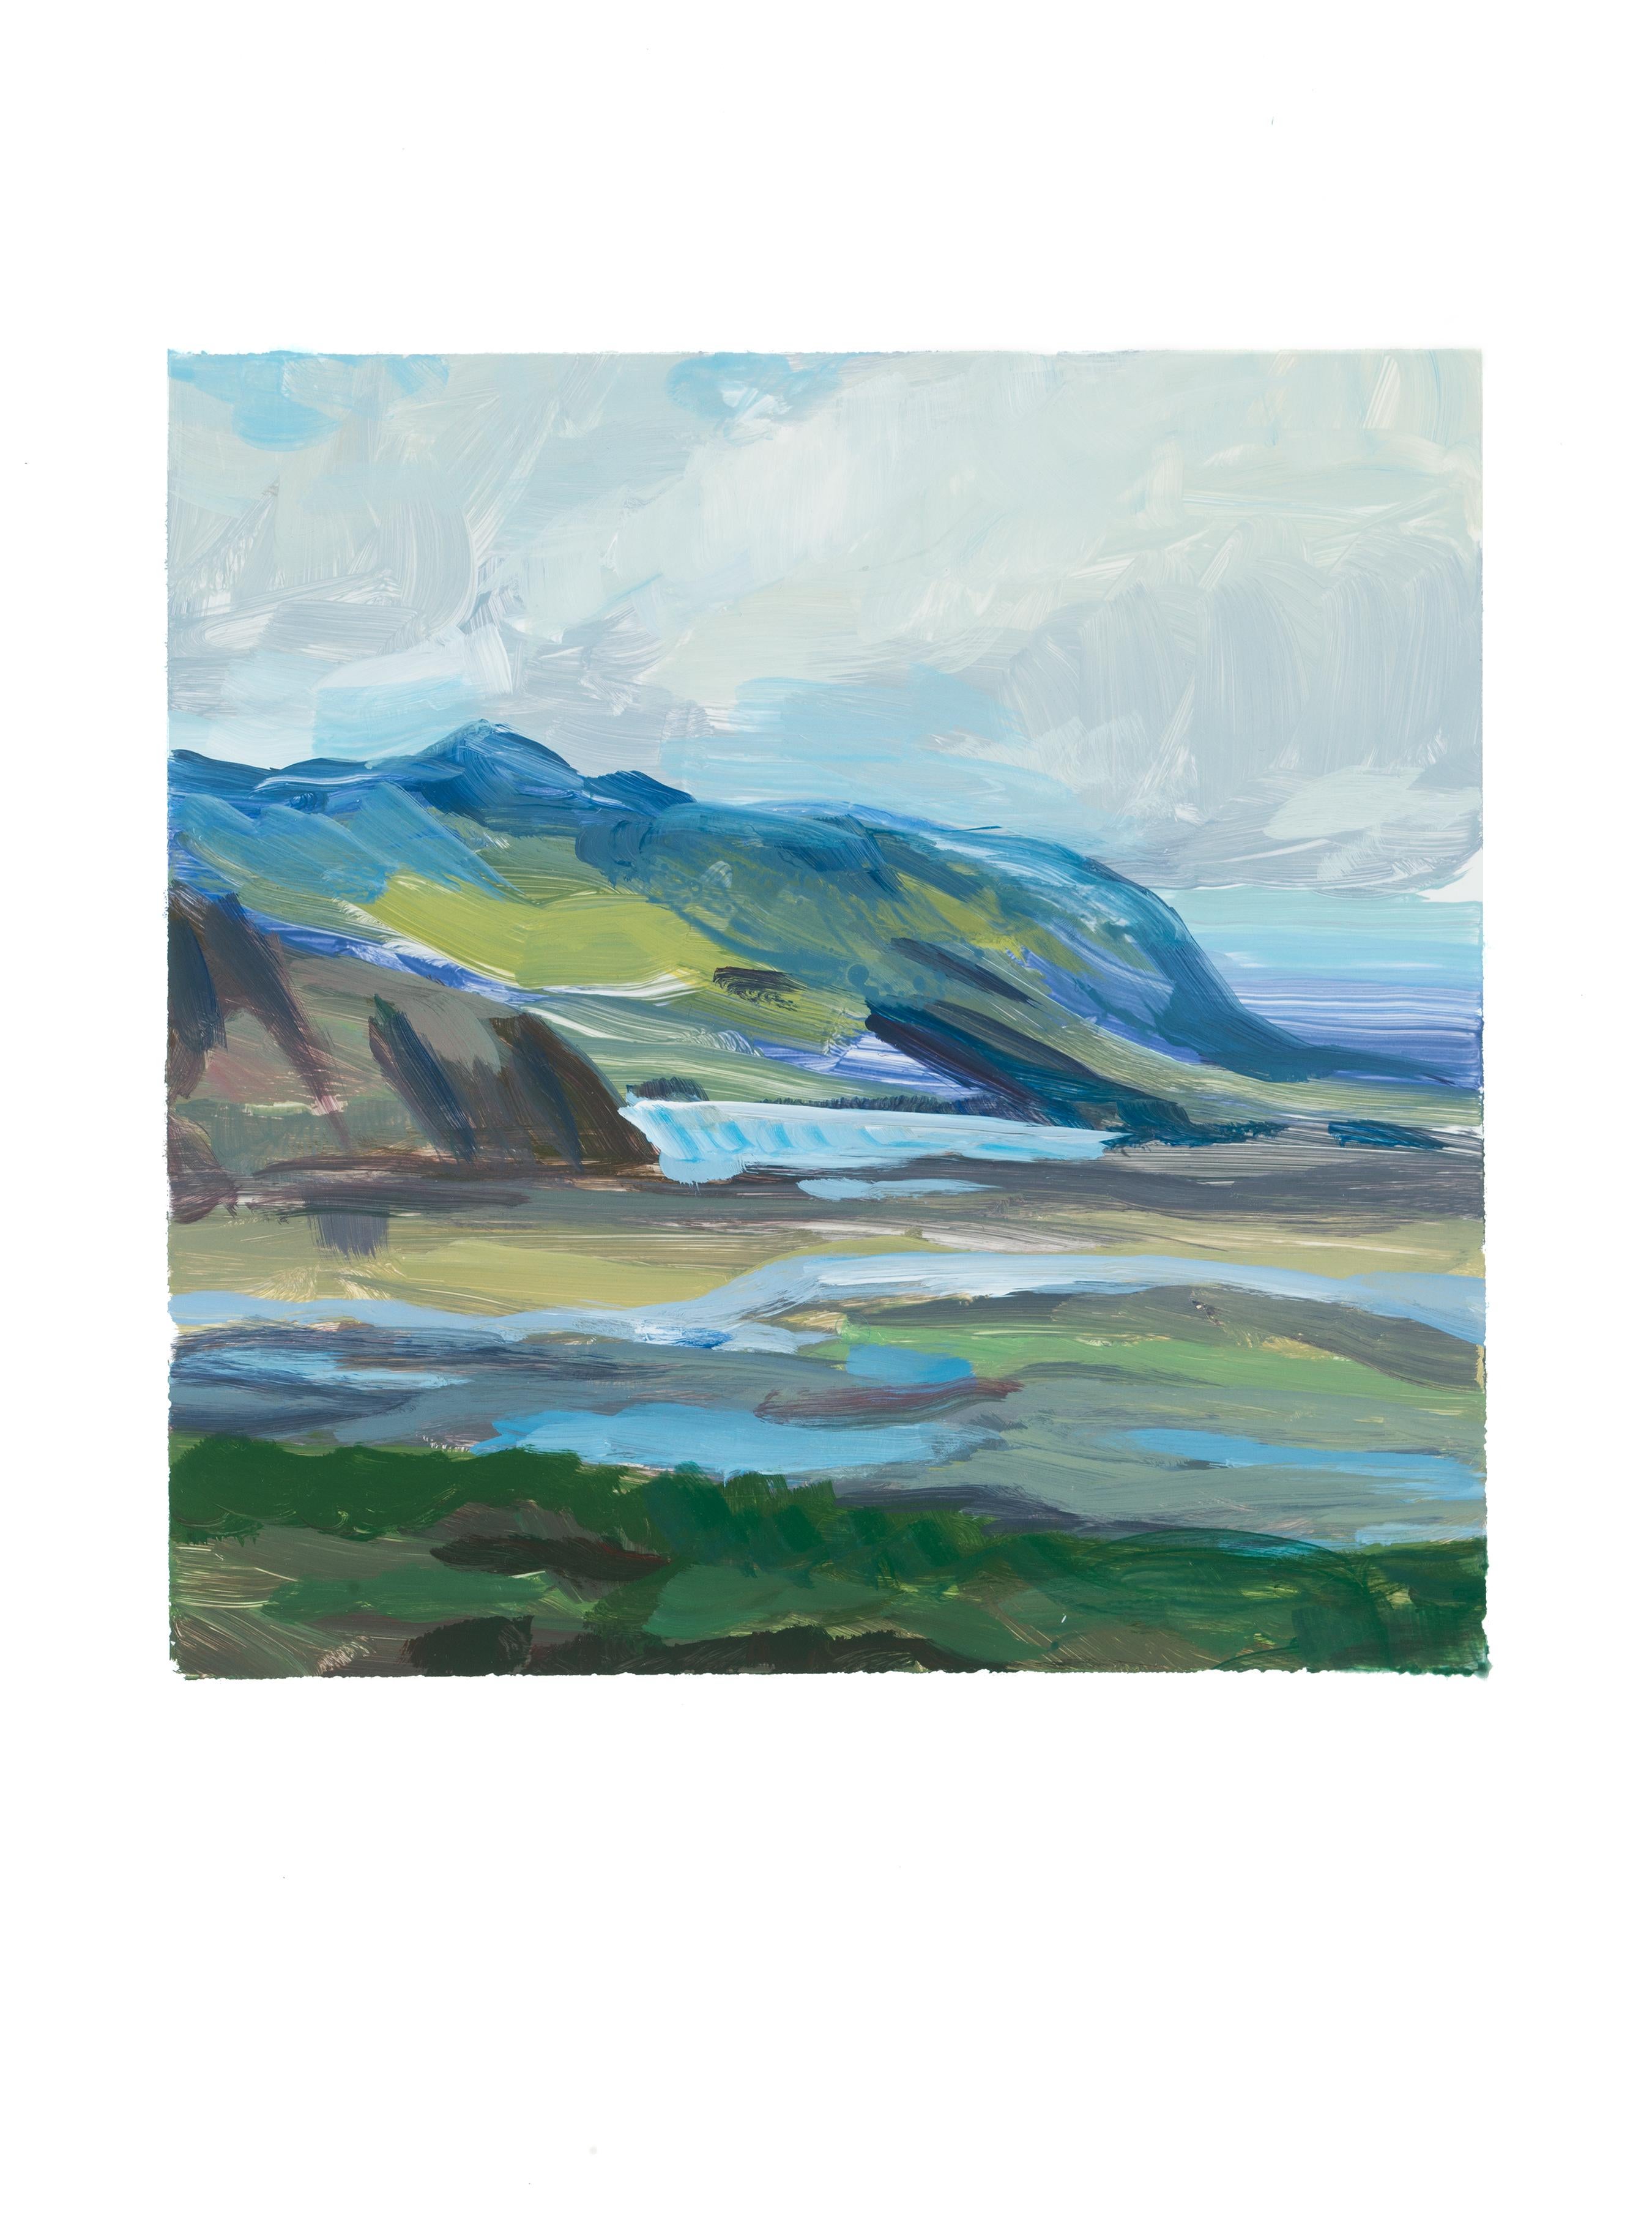 Landscape Painting Amanda Joy Brown - ICELANDIC - Glacier  Peinture de bord de roche océanique  Peinture à l'acrylique sur papier Yupo